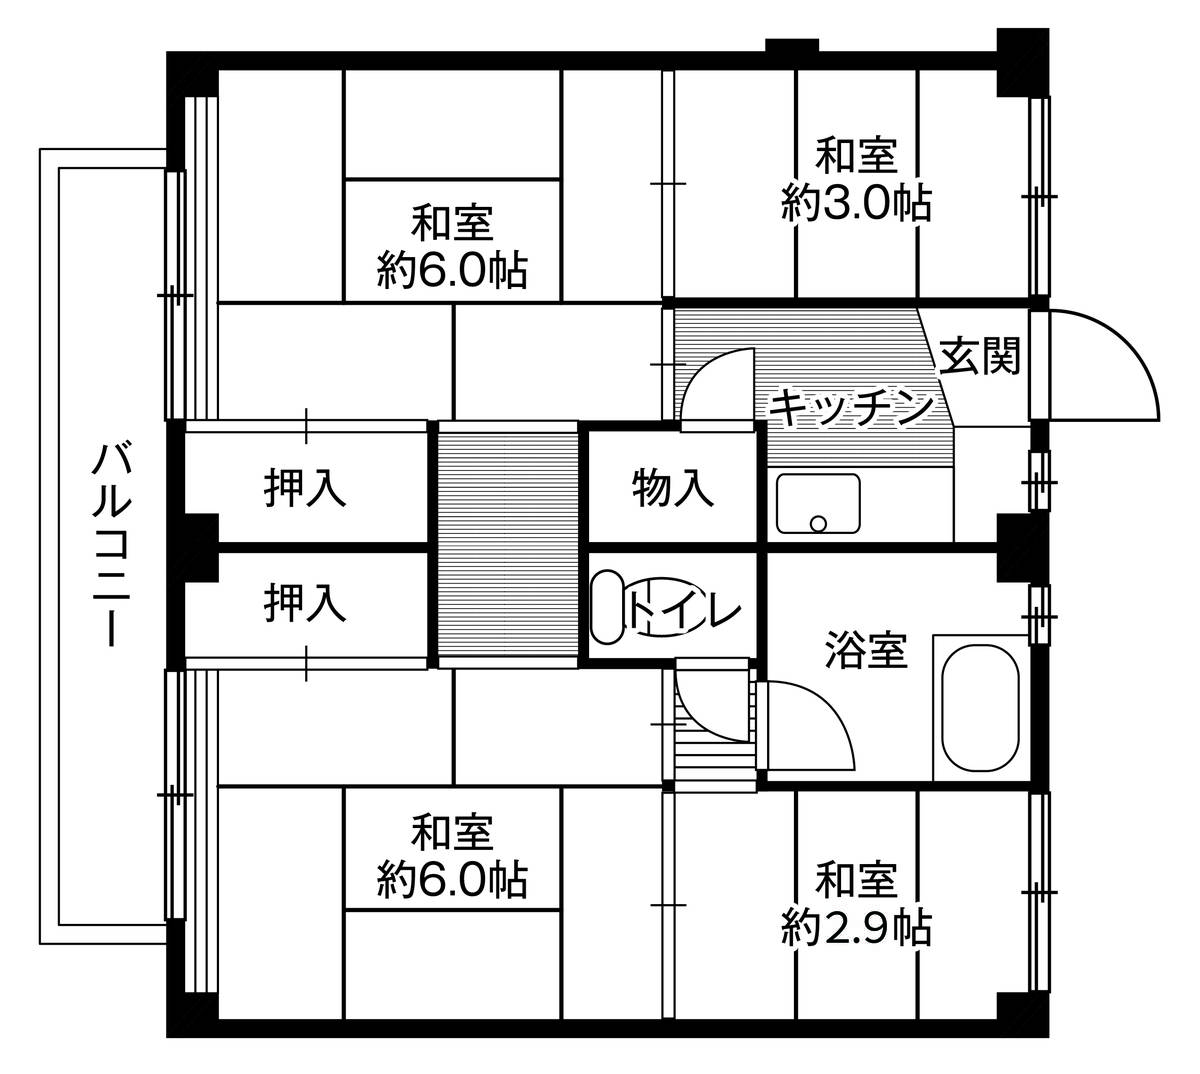 Sơ đồ phòng 4K của Village House Takahanadaira ở Yokkaichi-shi